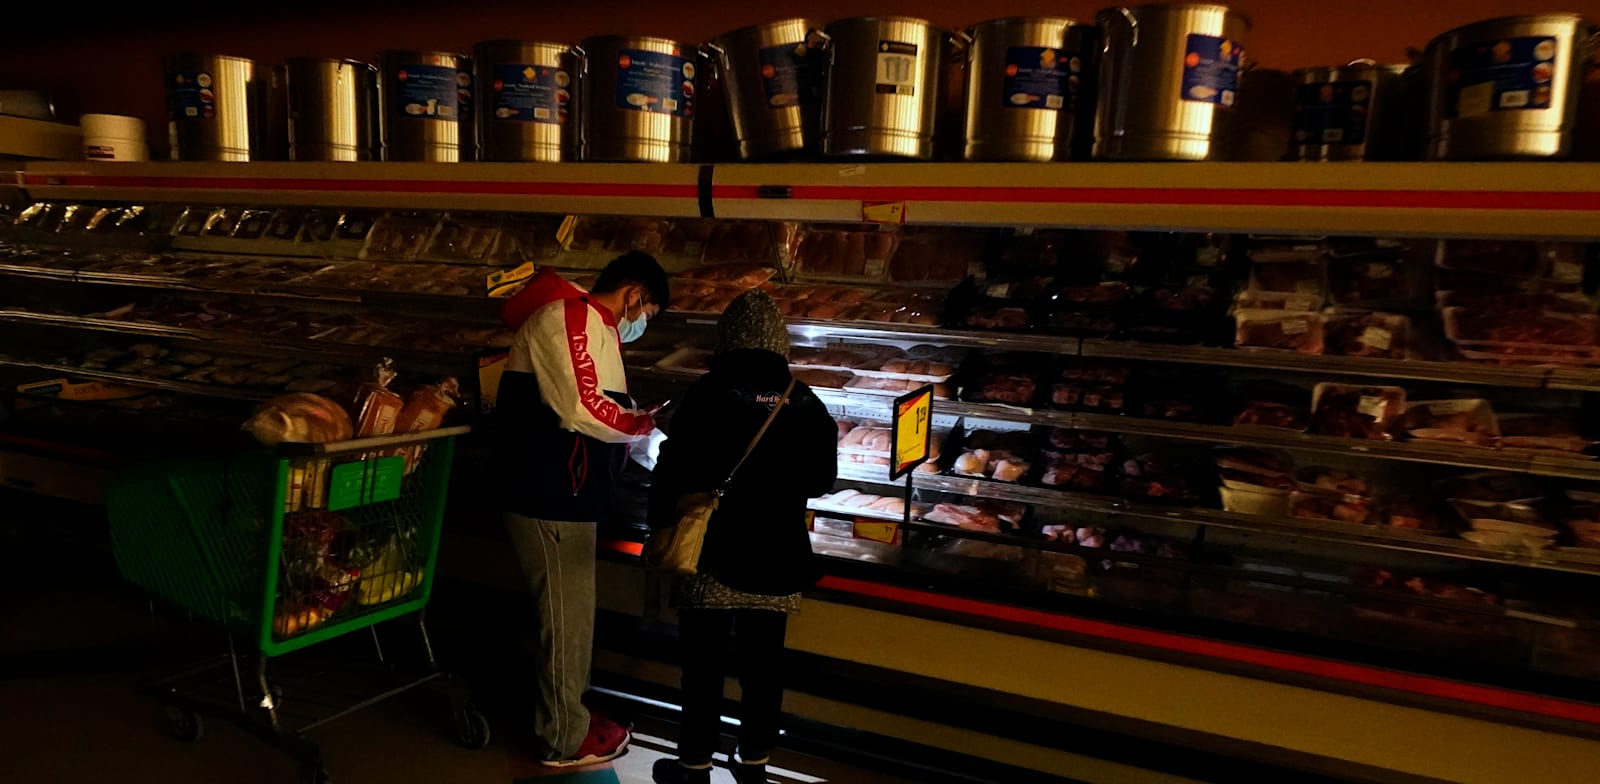 טקסנים משתמשים בפנס של הטלפון הסלולרי כדי לראות את המצרכים בחנות בדאלאס בזמן הפסקת החשמל / צילום: Associated Press, LM Otero